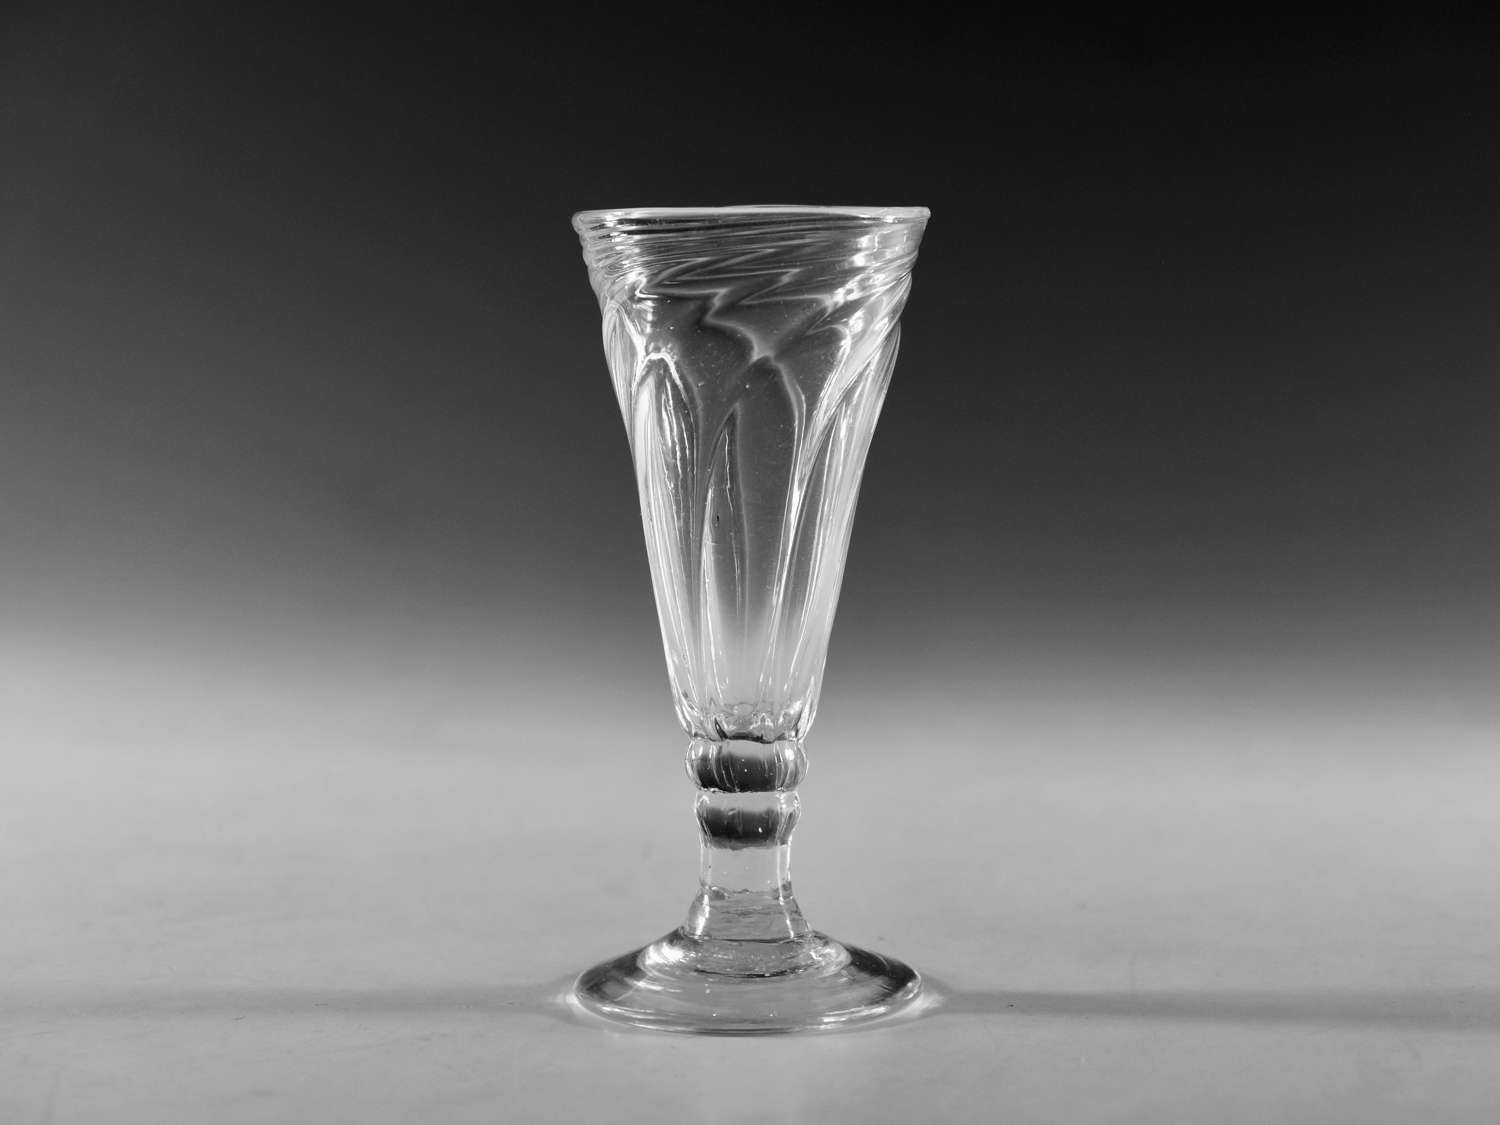 Antique glass - wrythen ale glass English c1800